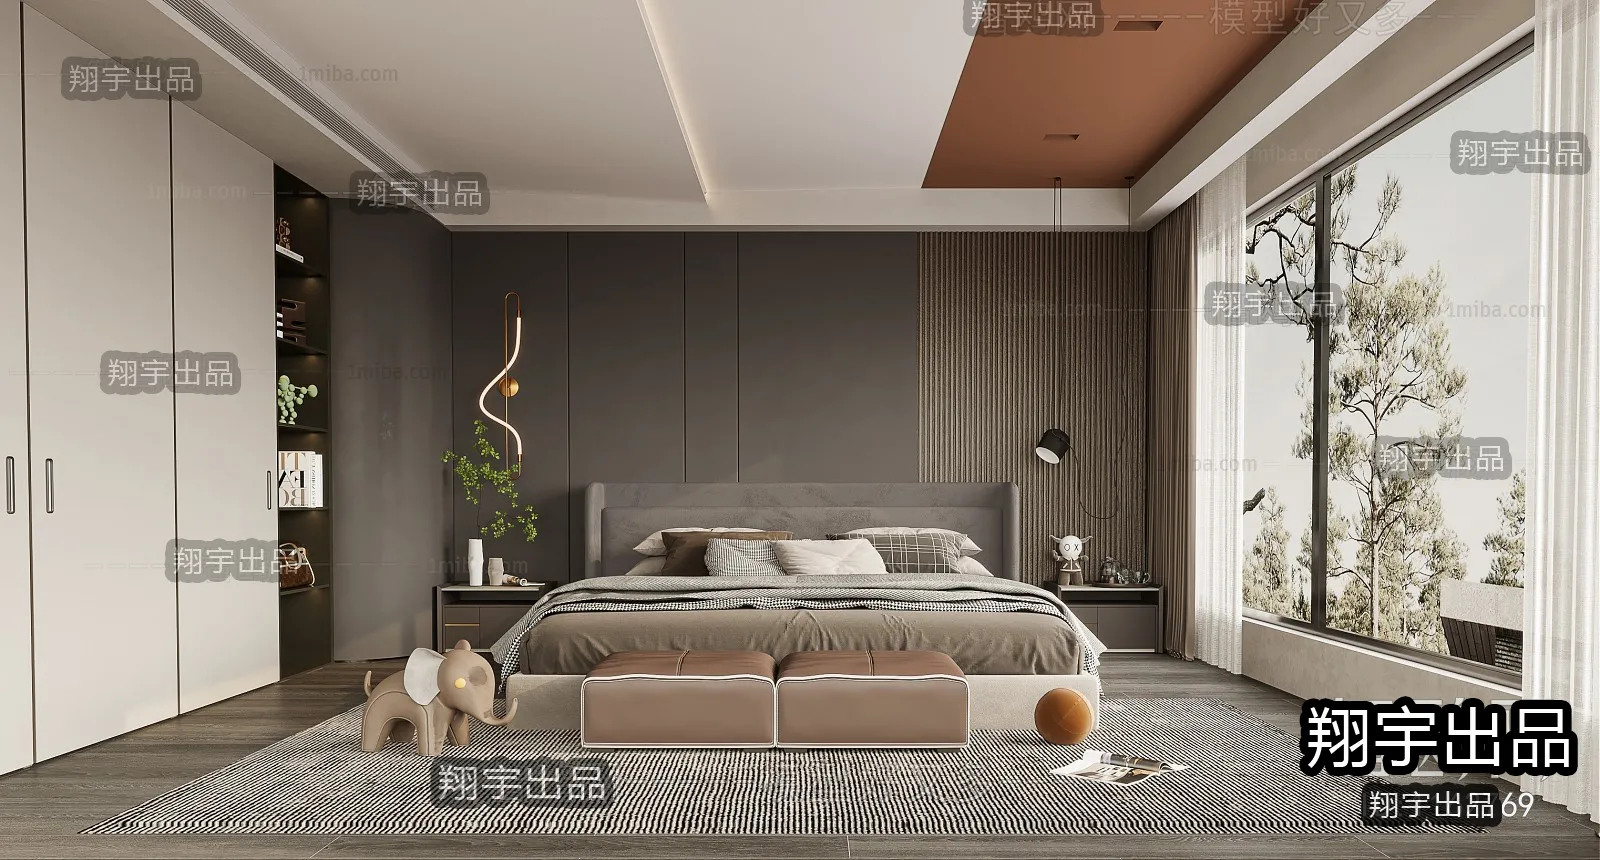 Bedroom – Modern Interior Design – 3D Models – 038